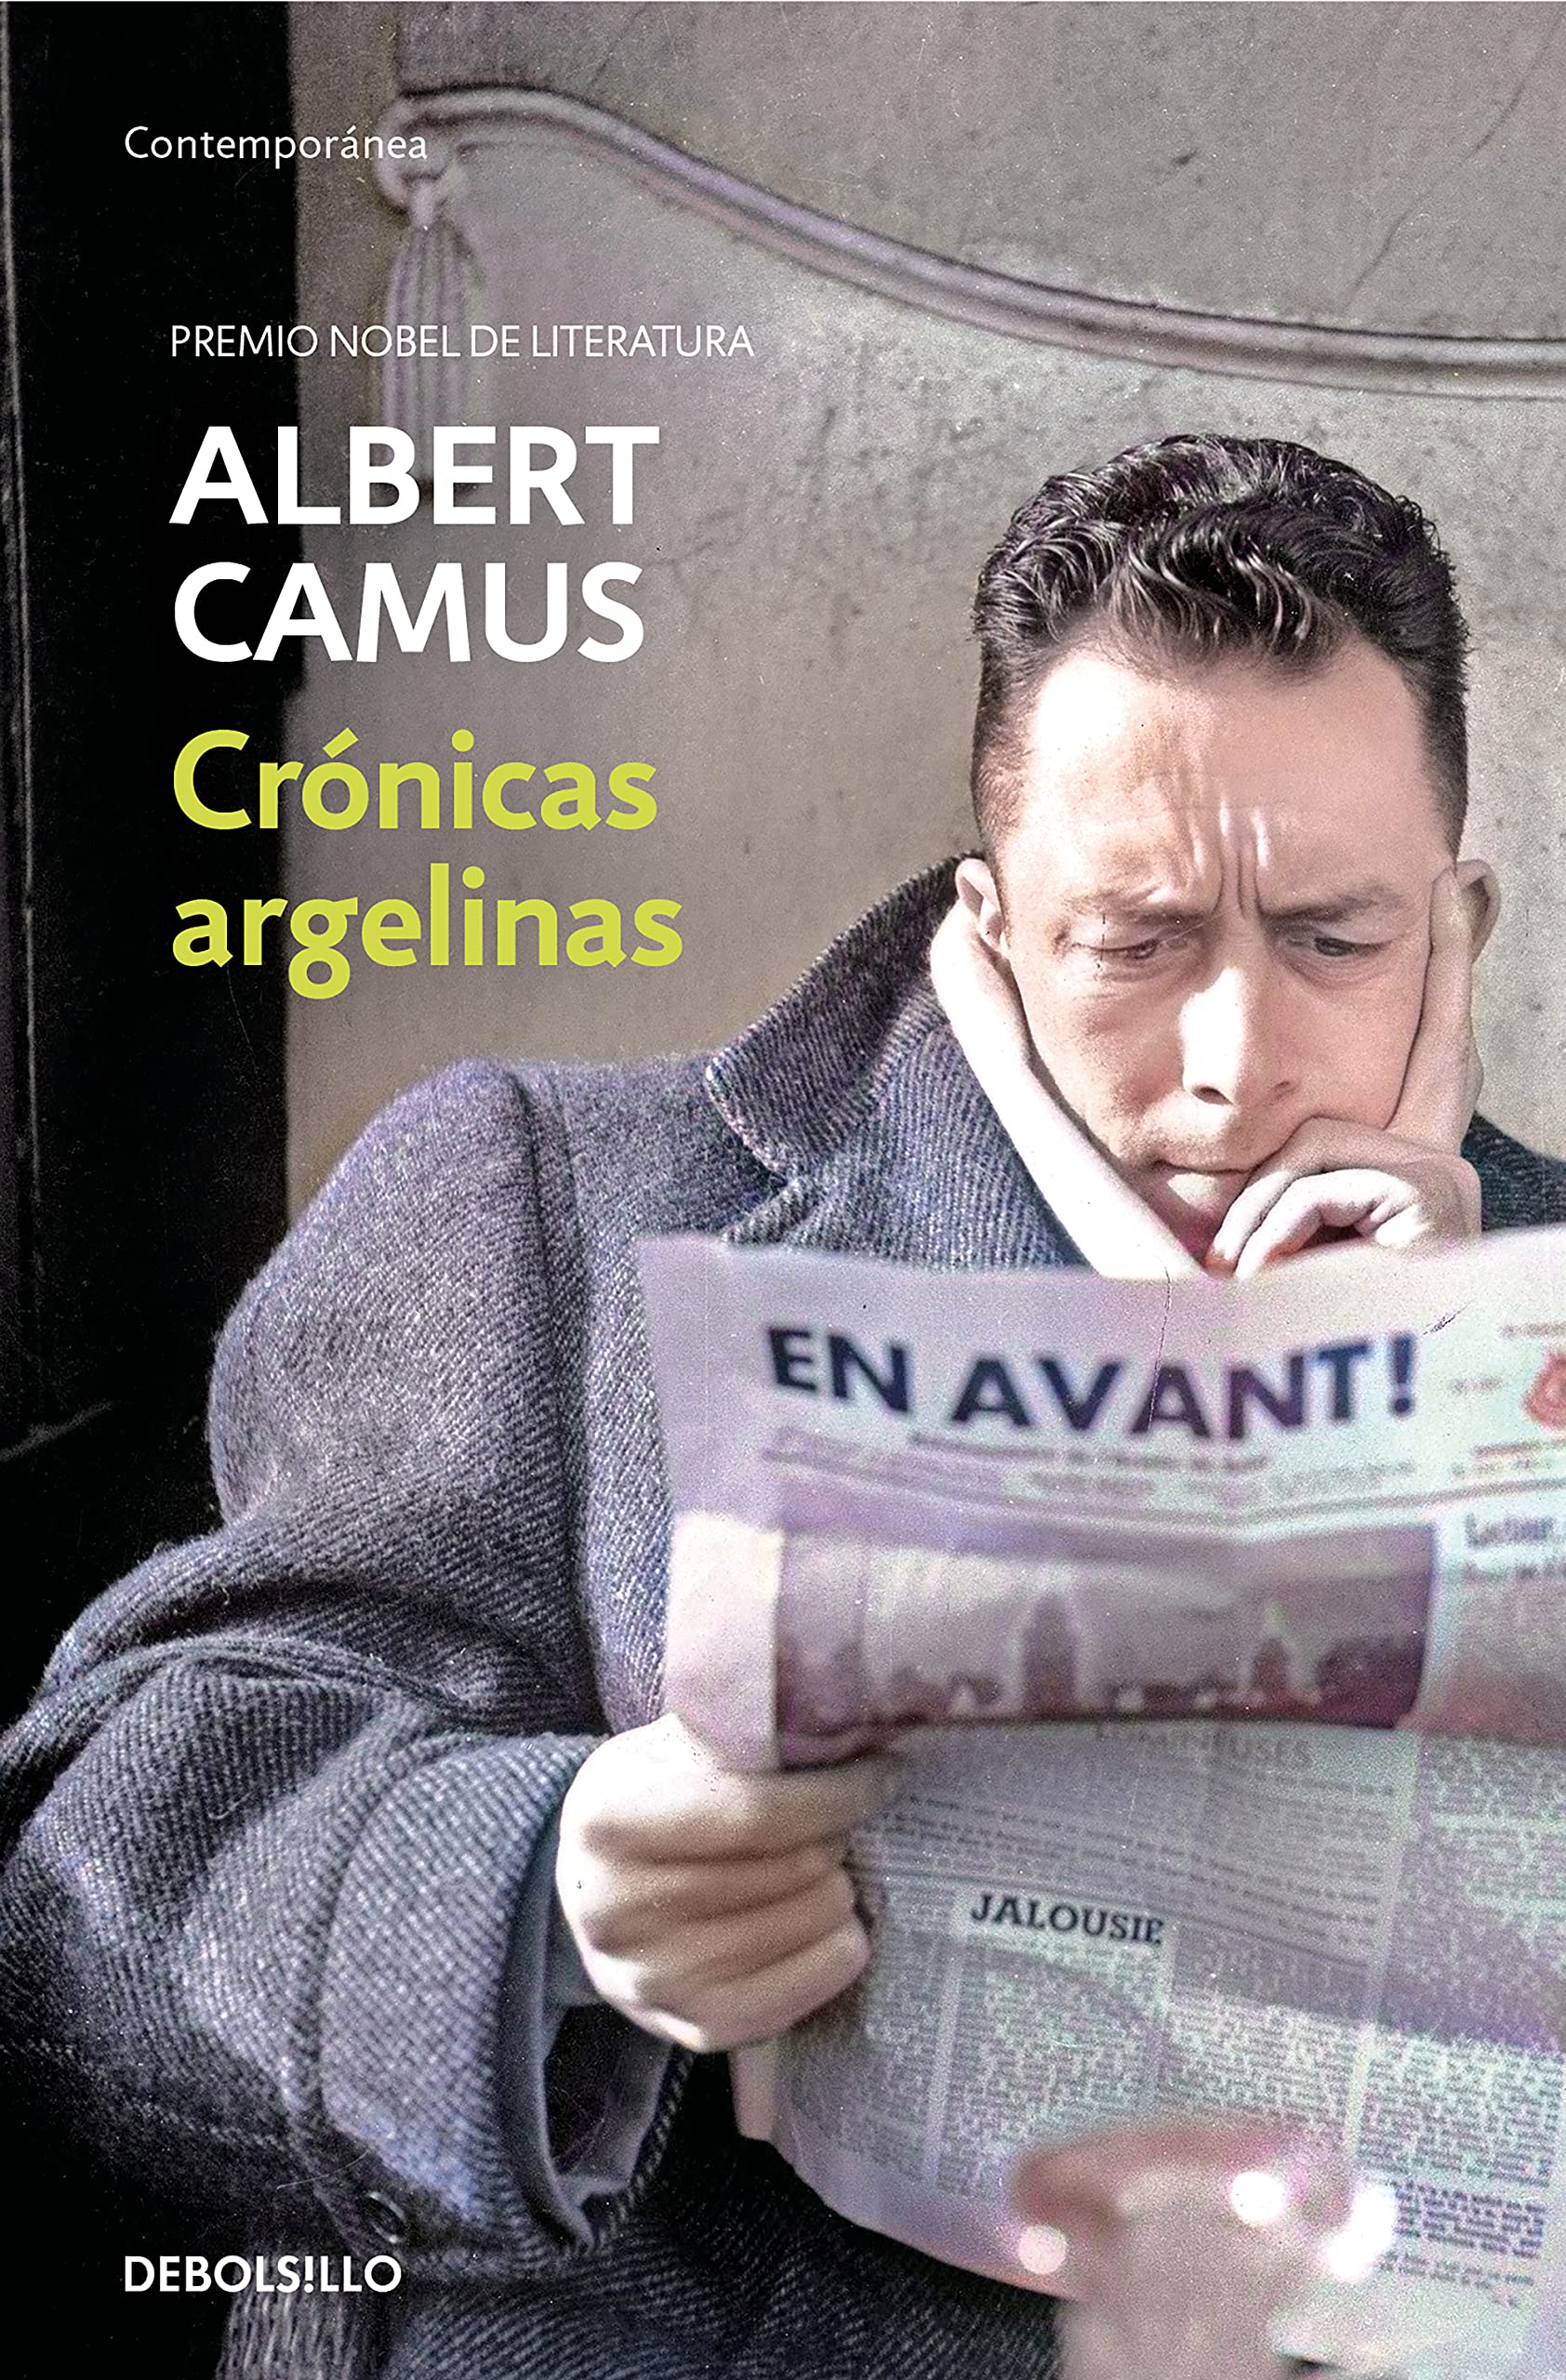 Zenda recomienda: Crónicas argelinas, de Albert Camus